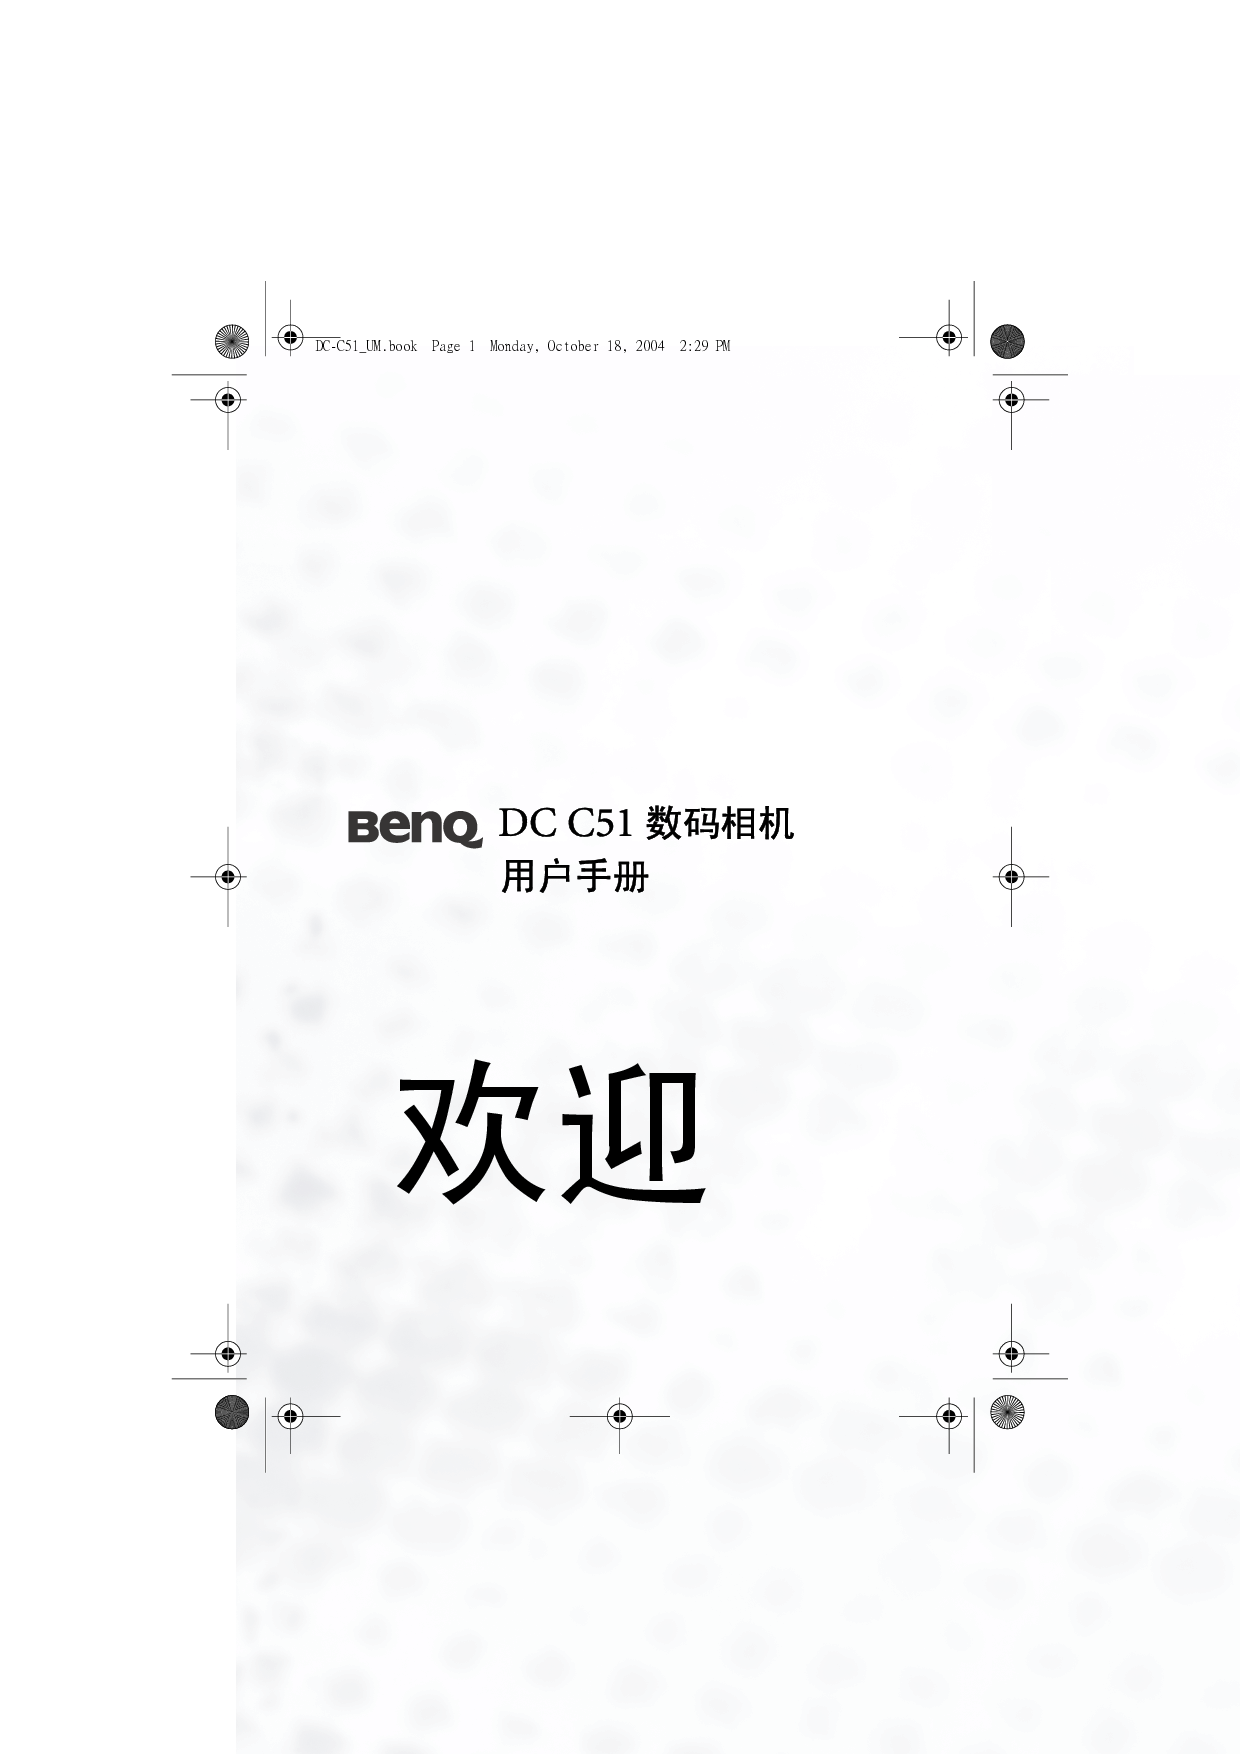 明基 Benq DC-C51 使用手册 封面